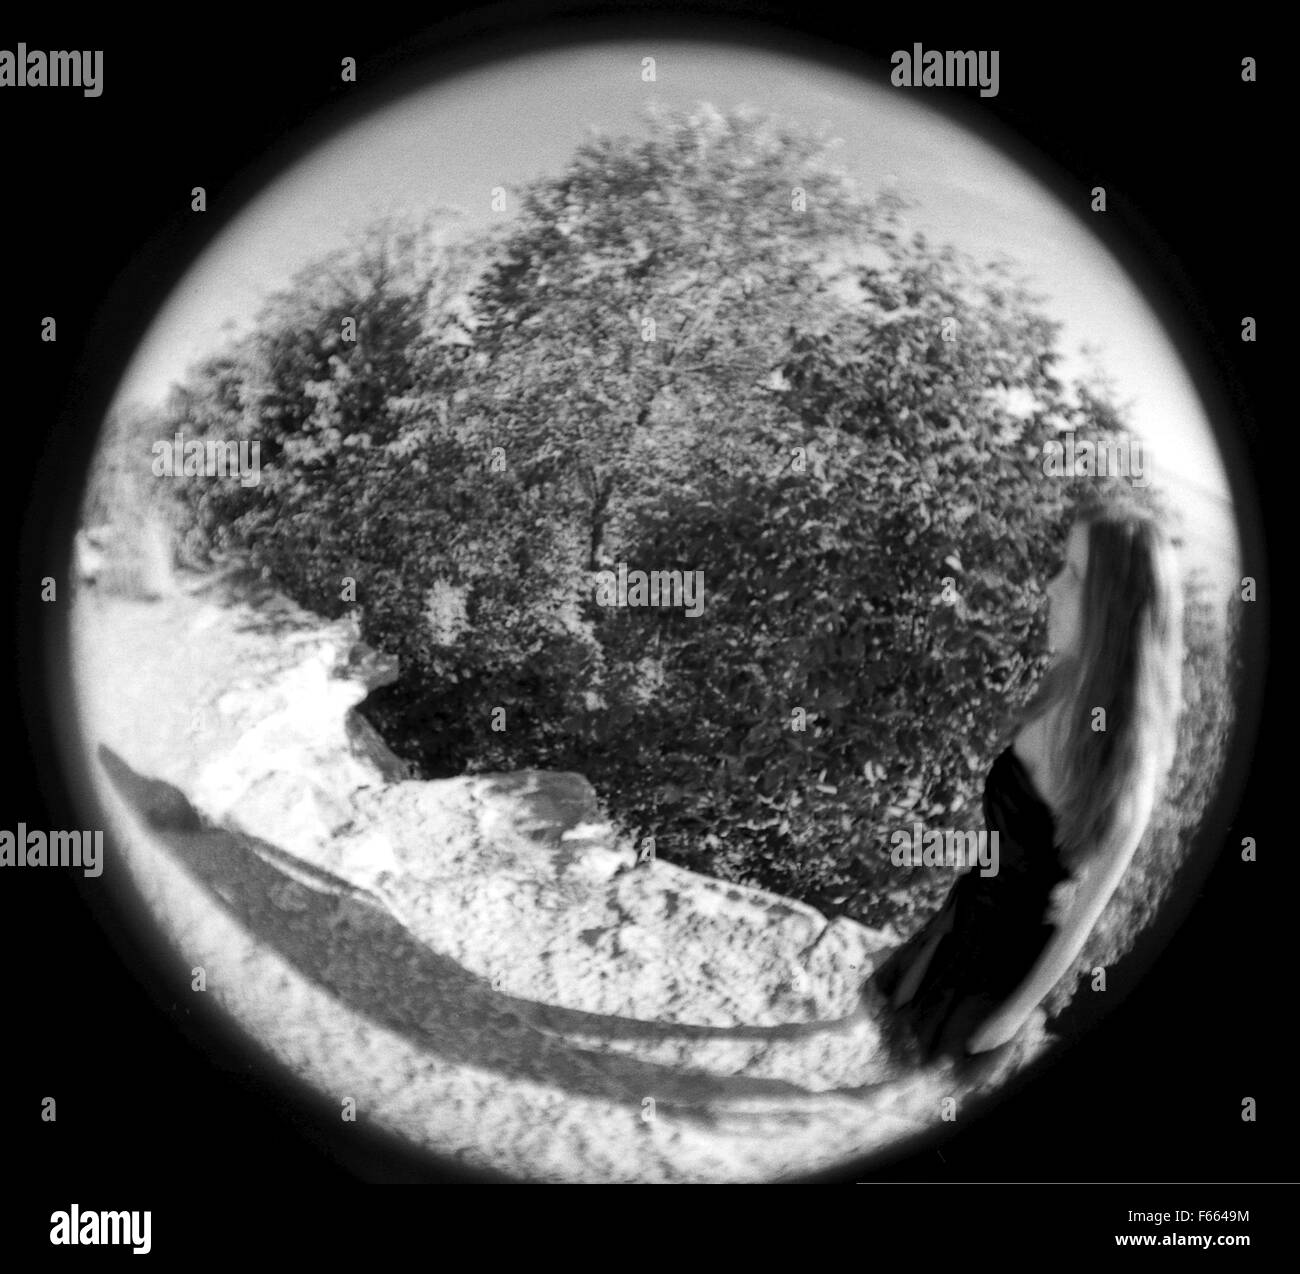 Fischaugen-objektiv Schwarz-Weiß-Fotografie aus einer Abbildung auf einer Klippe mit Bäumen im Hintergrund, abstrakt. Stockfoto